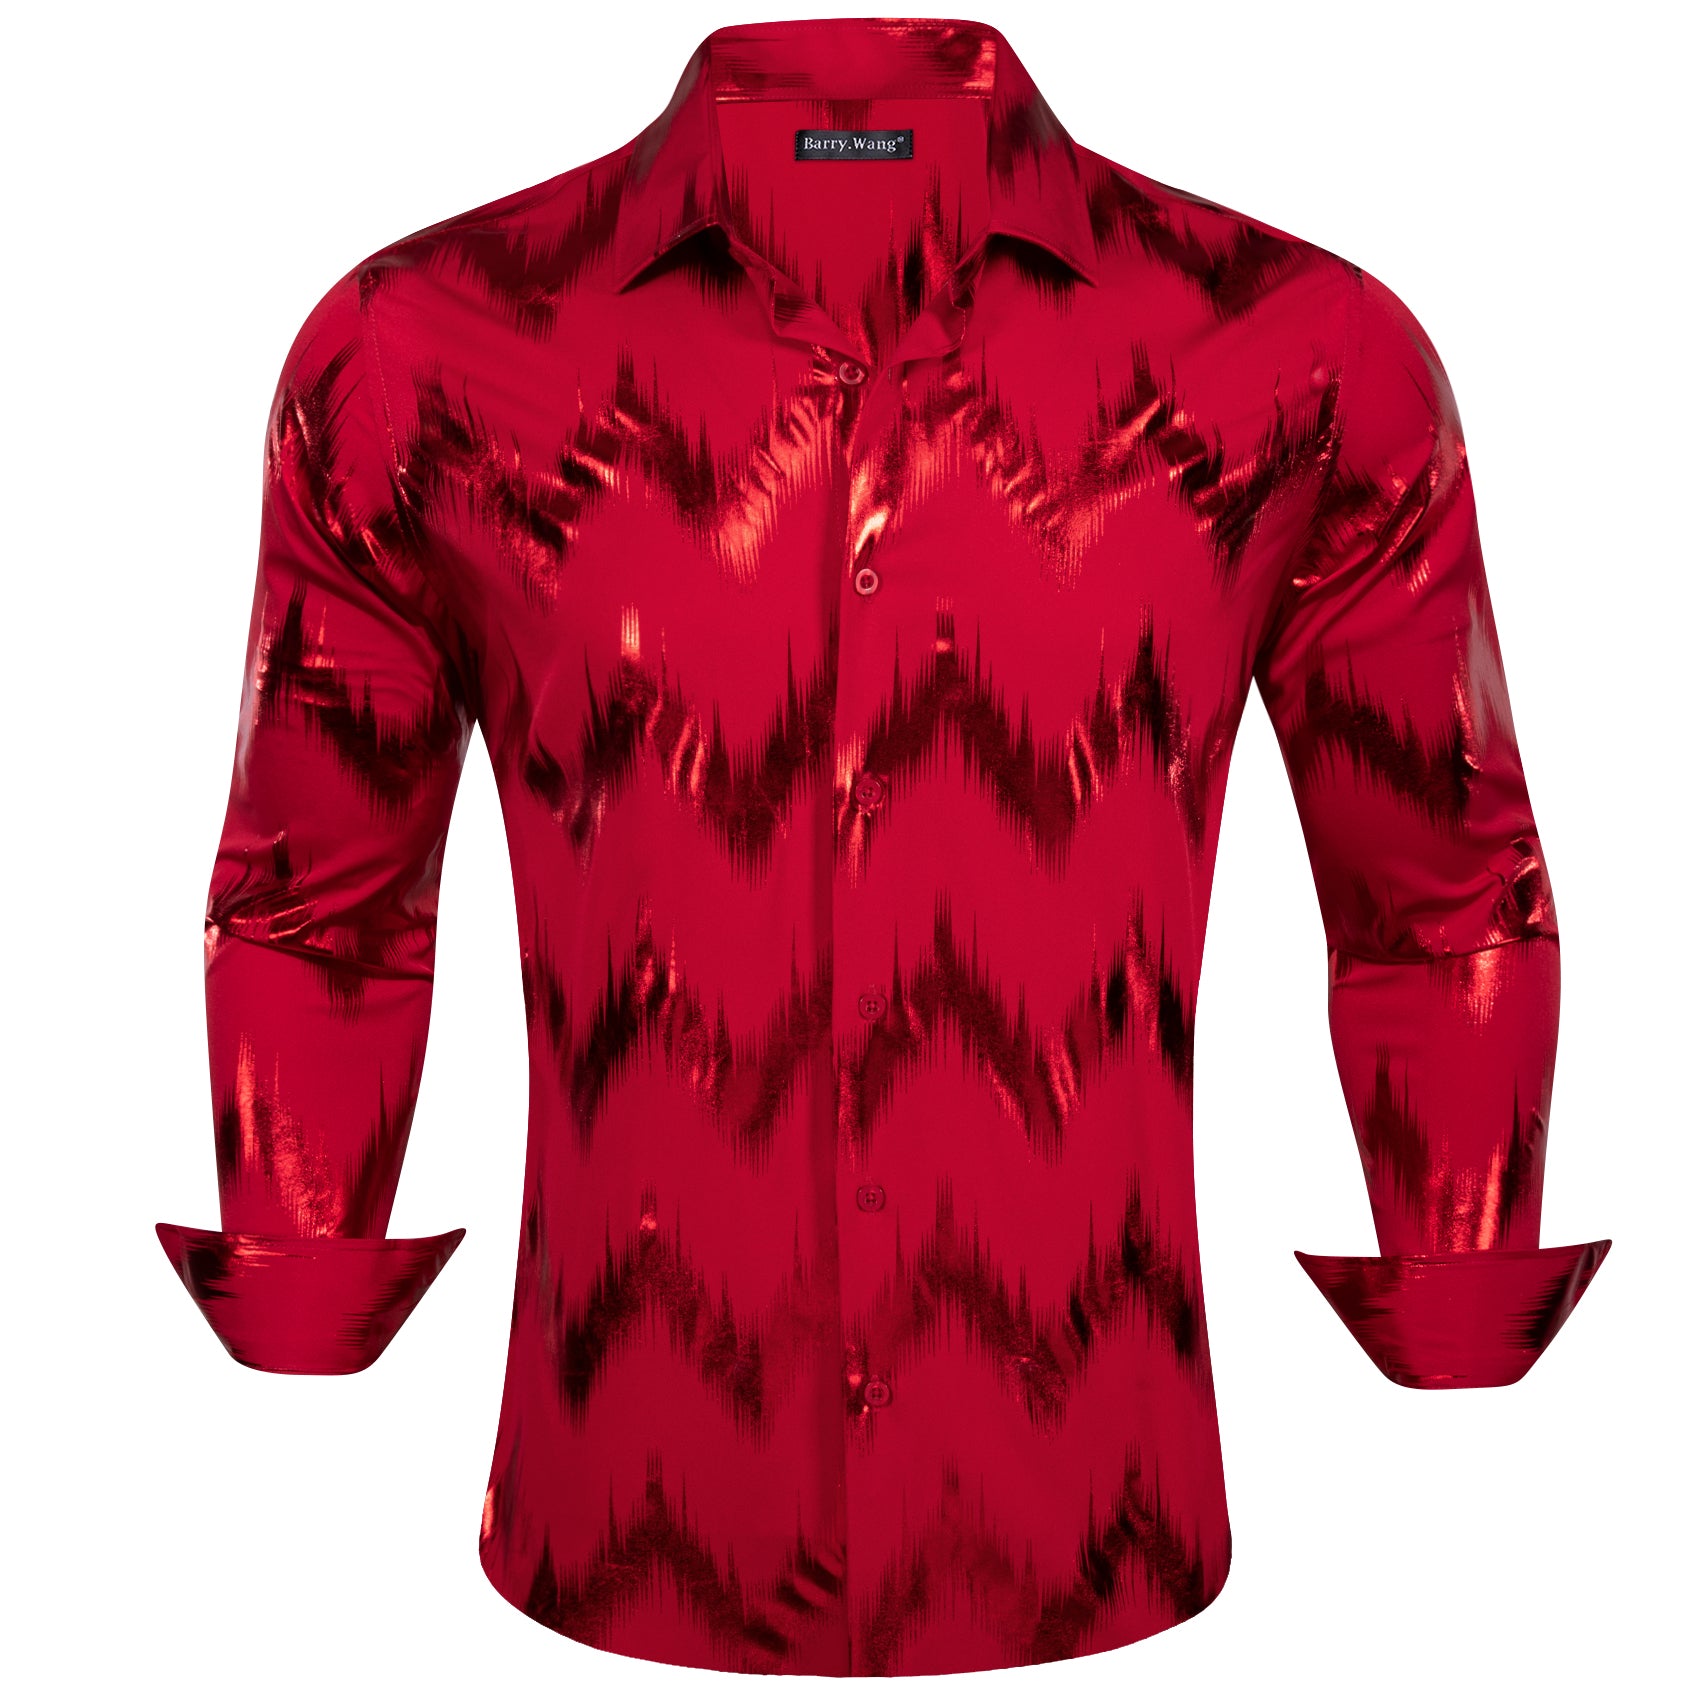 Barry.wang Stylish Shirt Bronzing Printing Red Men's Shirt